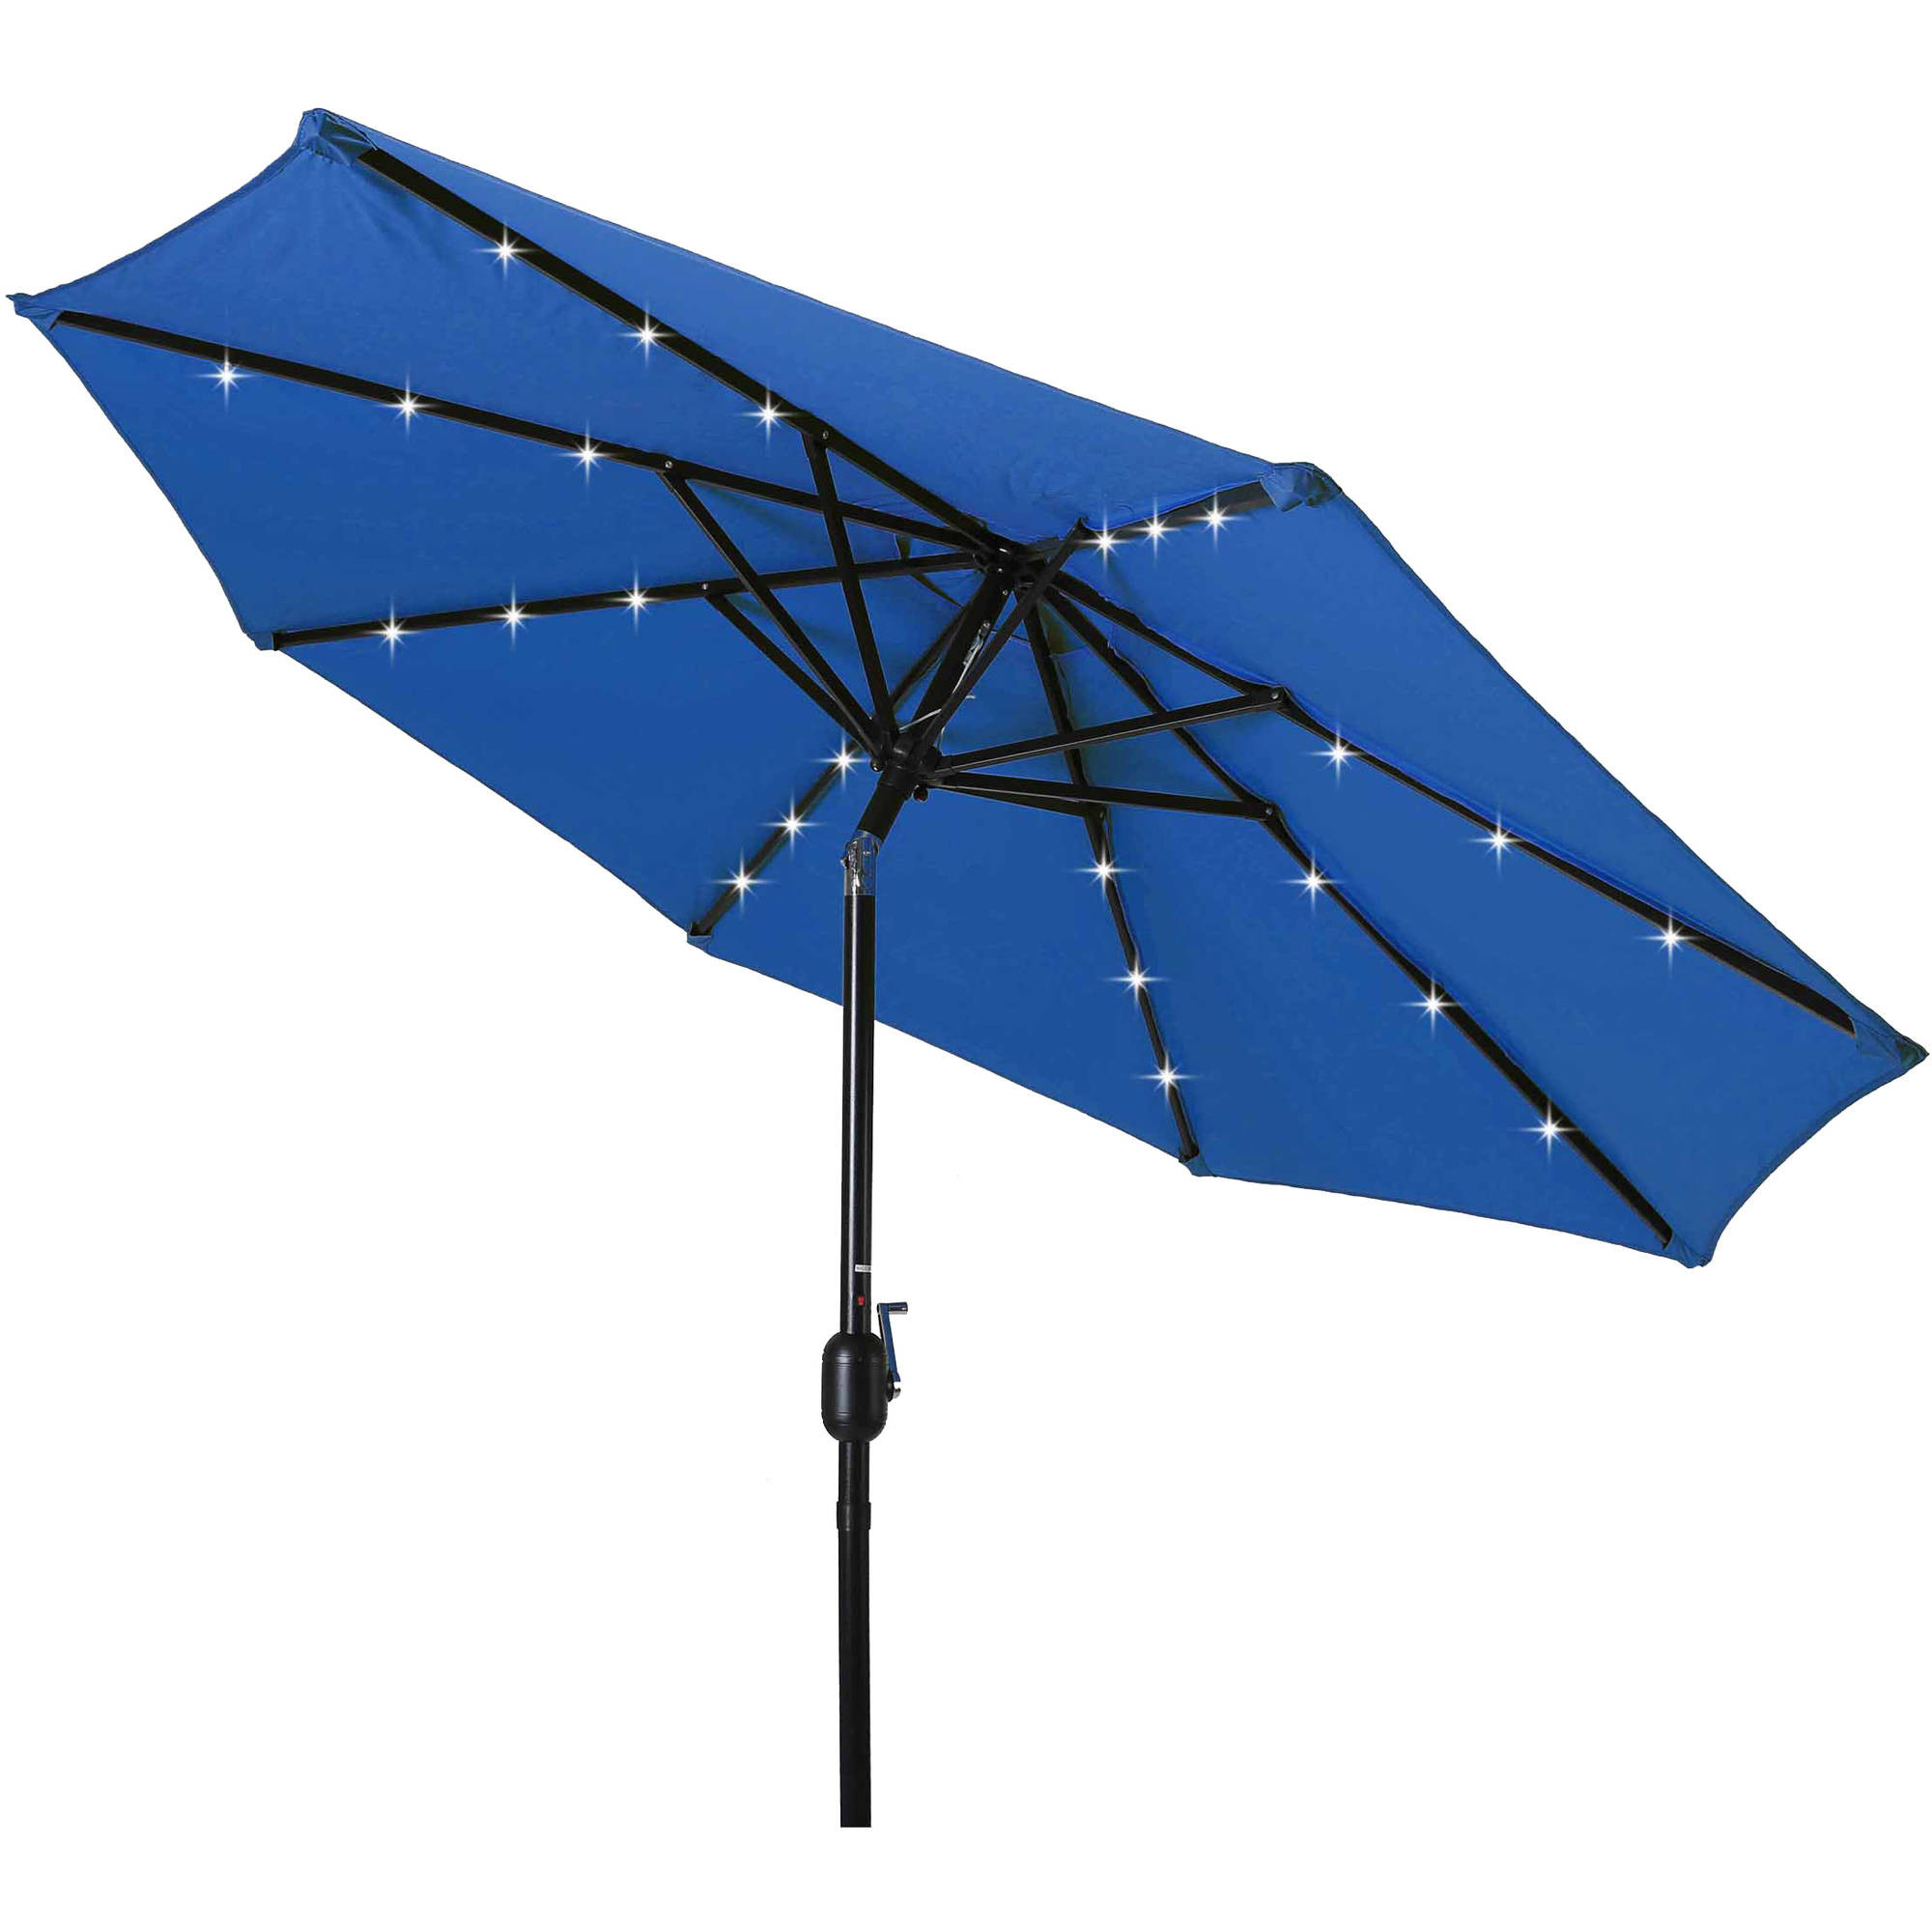 Best ideas about Patio Umbrellas Walmart
. Save or Pin Patio Umbrella Lights Walmart pixelmari Now.